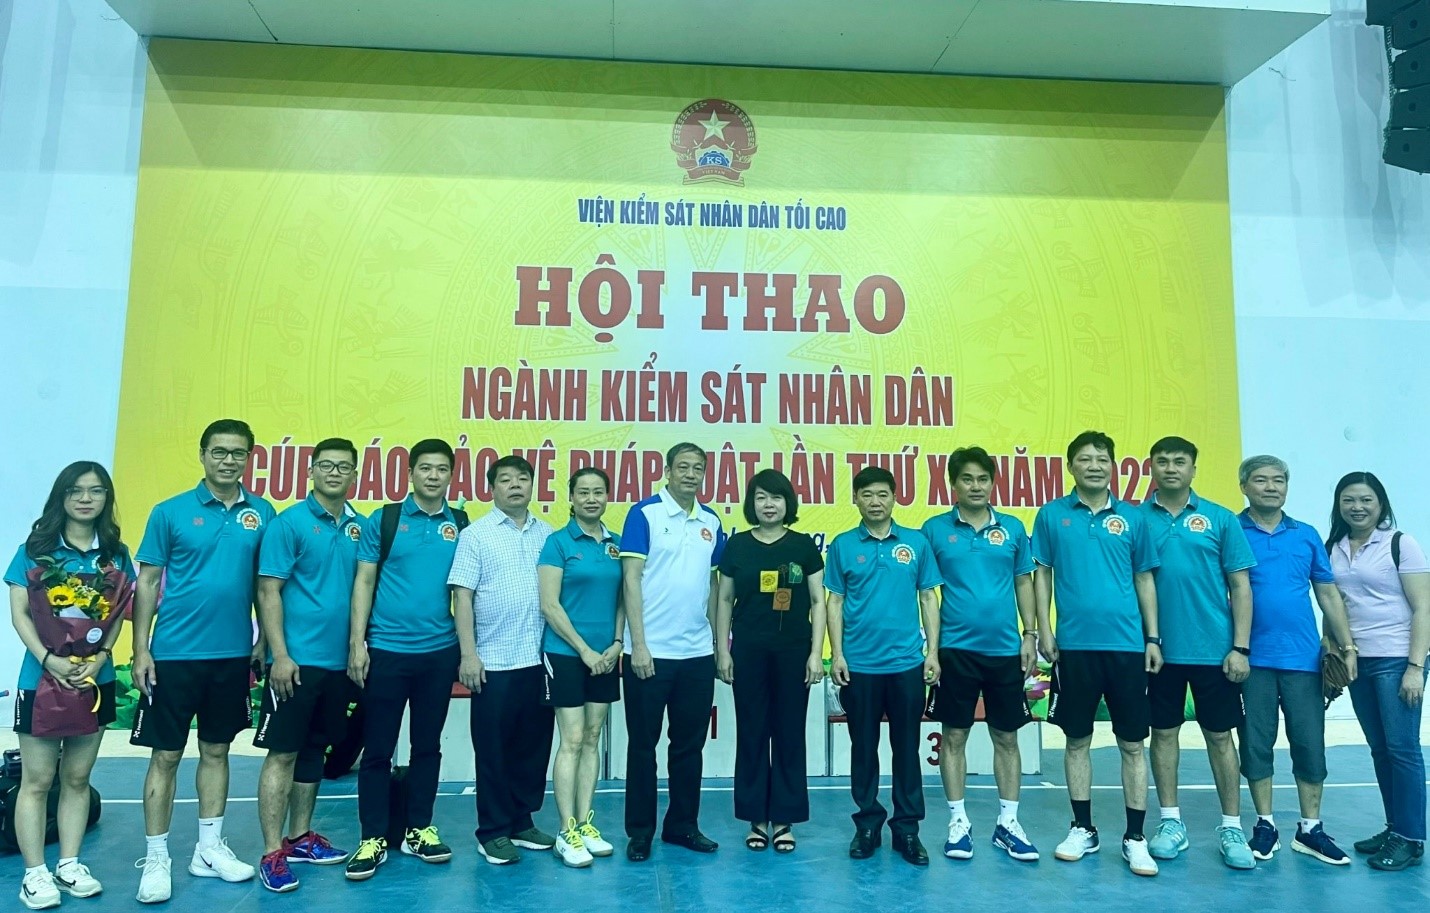 Đoàn thể thao Viện kiểm sát nhân dân cấp cao tại Hà Nội tham dự hội thao ngành Kiểm sát nhân dân “ cúp báo bảo vệ pháp luật lần thứ XI” năm 2022